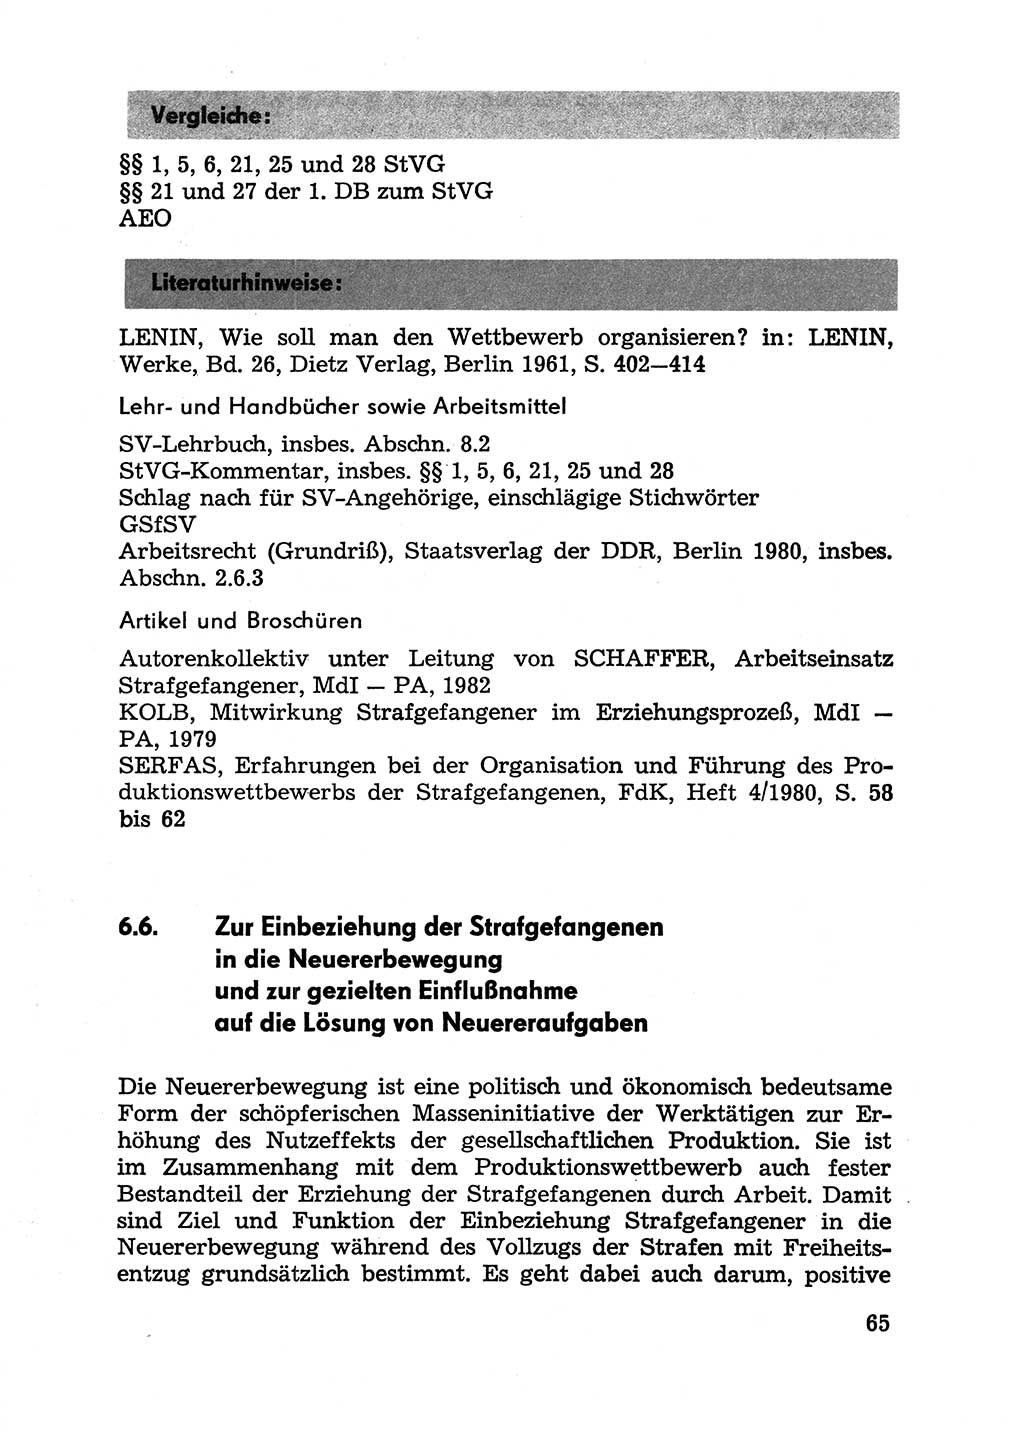 Handbuch für Betriebsangehörige, Abteilung Strafvollzug (SV) [Ministerium des Innern (MdI) Deutsche Demokratische Republik (DDR)] 1981, Seite 65 (Hb. BA Abt. SV MdI DDR 1981, S. 65)